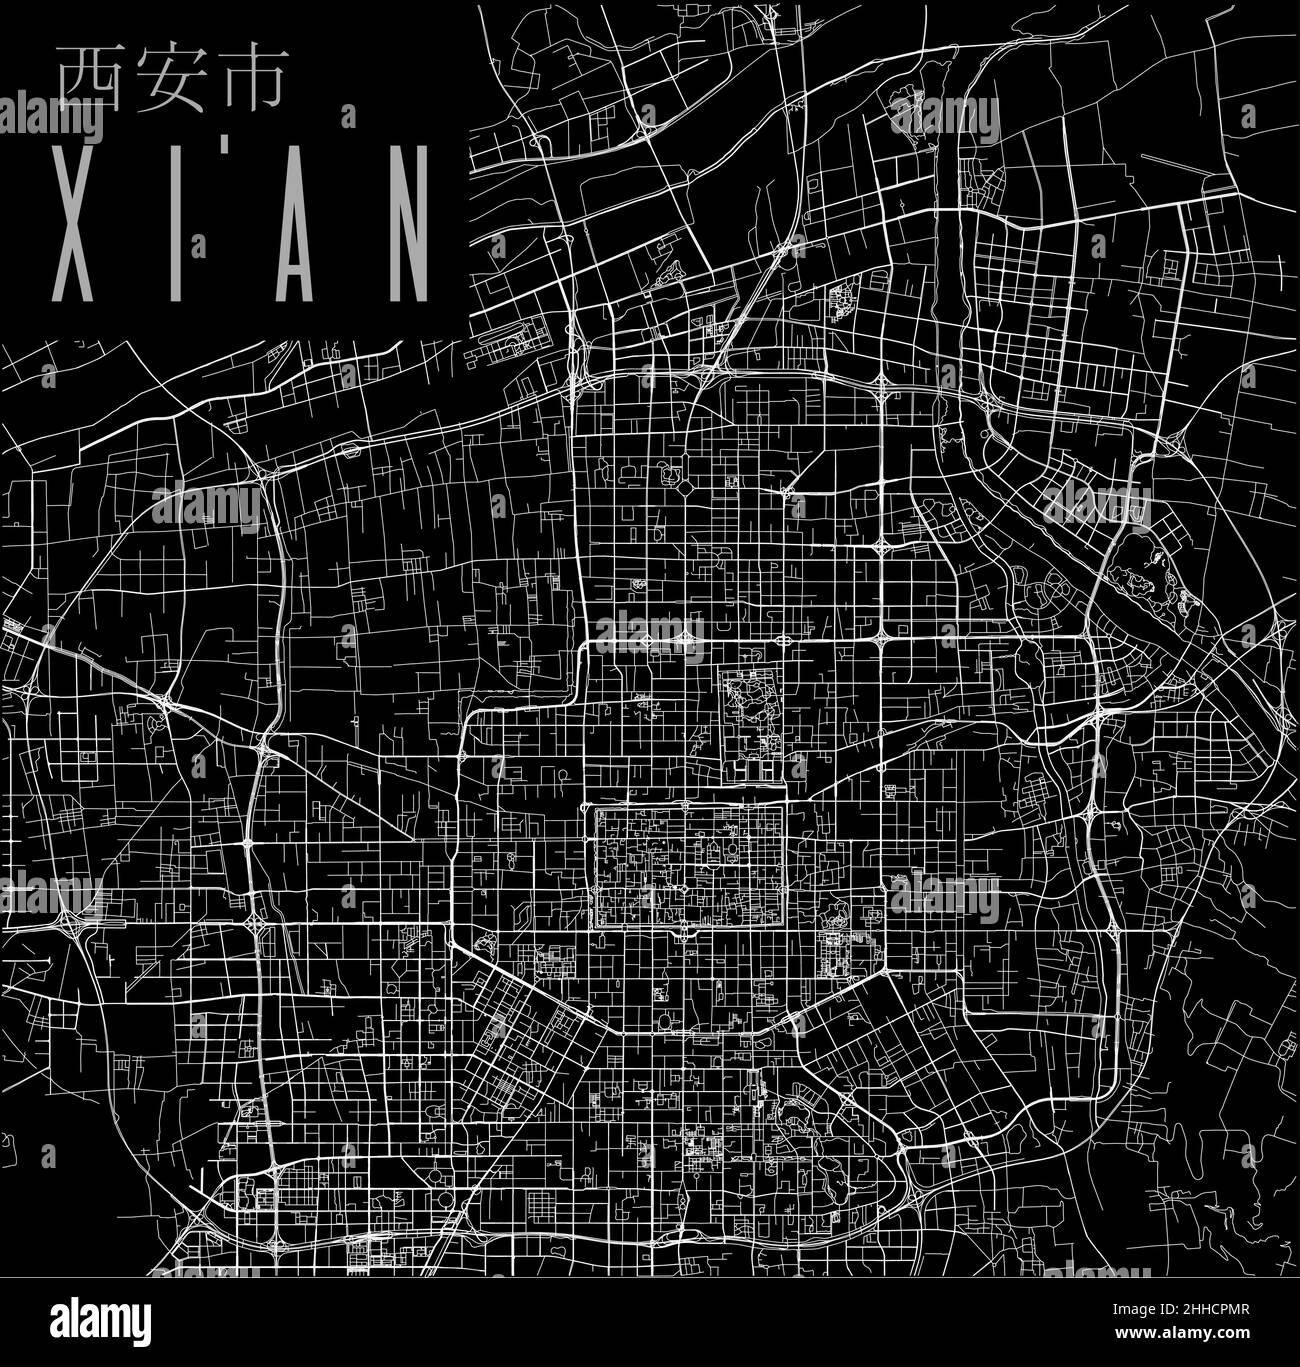 Affiche de carte vectorielle de la ville de Xi'an.Carte linéaire de la municipalité chinoise, zone administrative municipale, lignes blanches sur fond noir, avec titre. Illustration de Vecteur